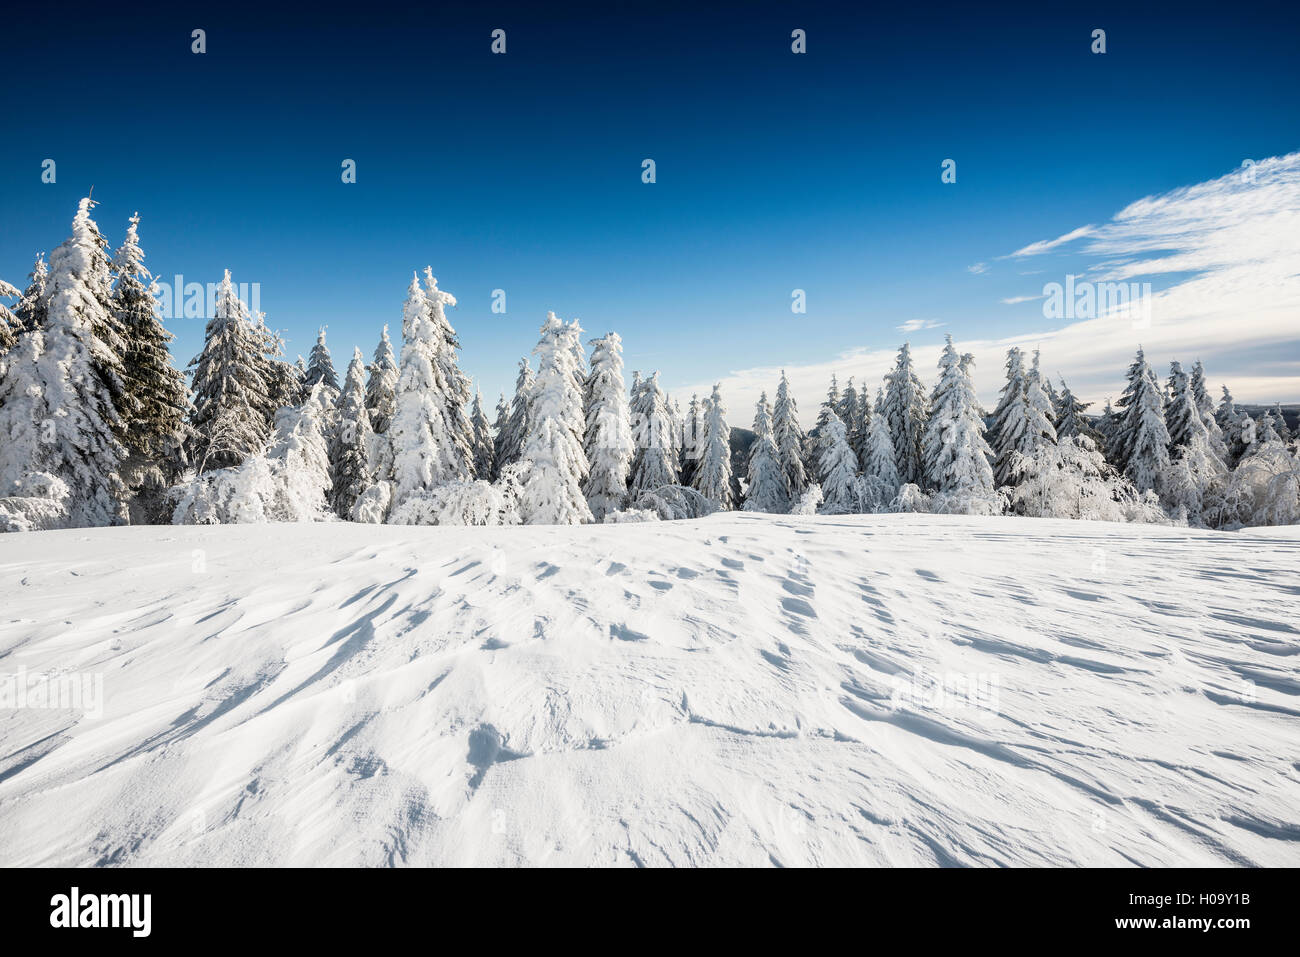 Snowy fir trees, snowdrift, Schauinsland, Freiburg im Breisgau, Black Forest, Baden-Württemberg, Germany Stock Photo